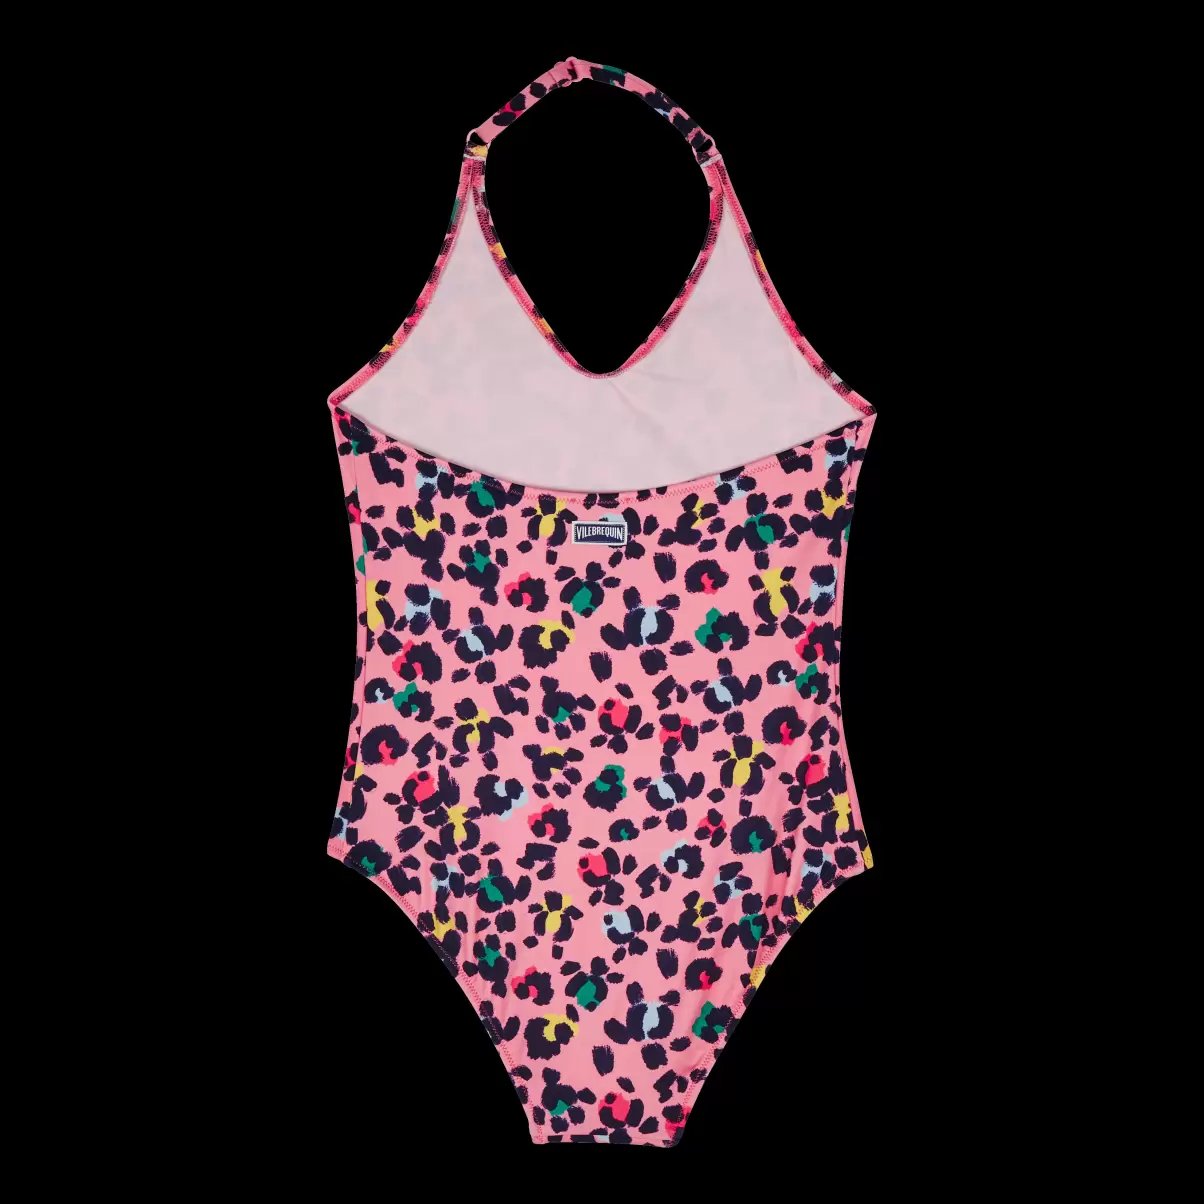 Badeanzug Turtles Leopard Badeanzug Für Mädchen Reduzierter Preis Vilebrequin Mädchen Bonbon / Rosa - 2